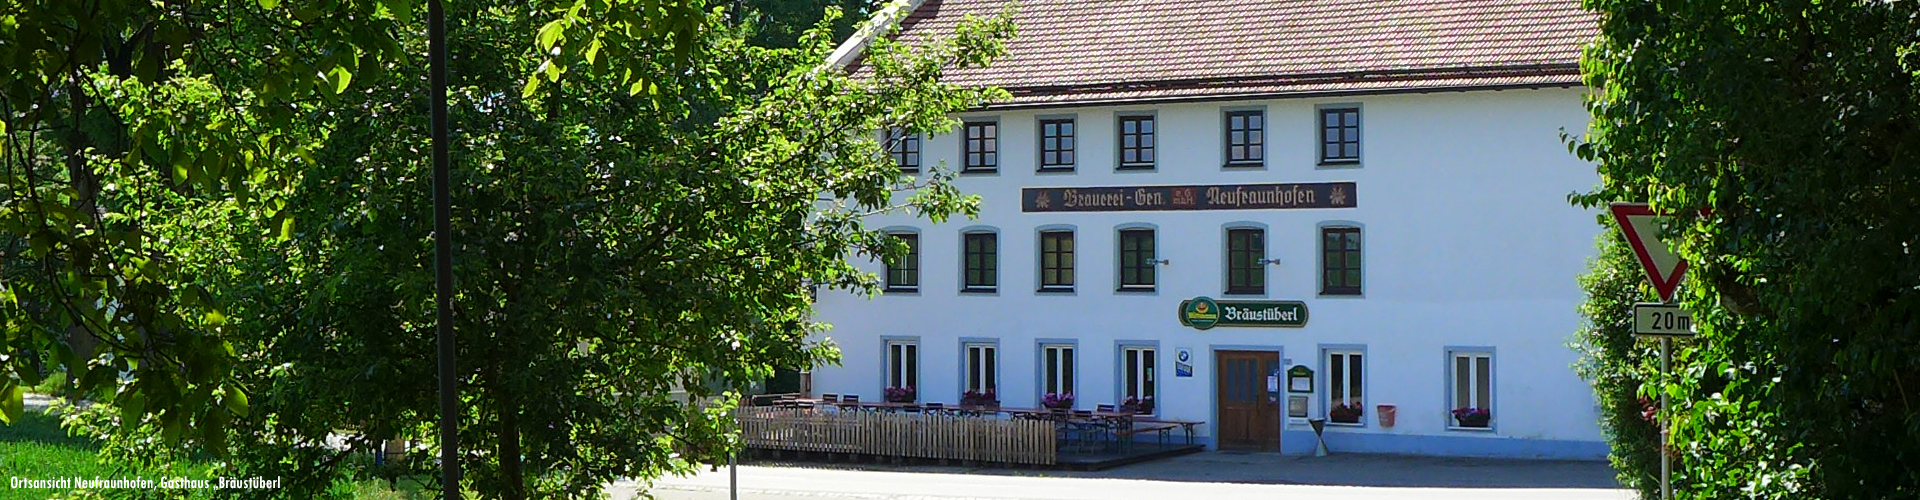 Blick auf die "Dorfschänke" in Neufraunhofen